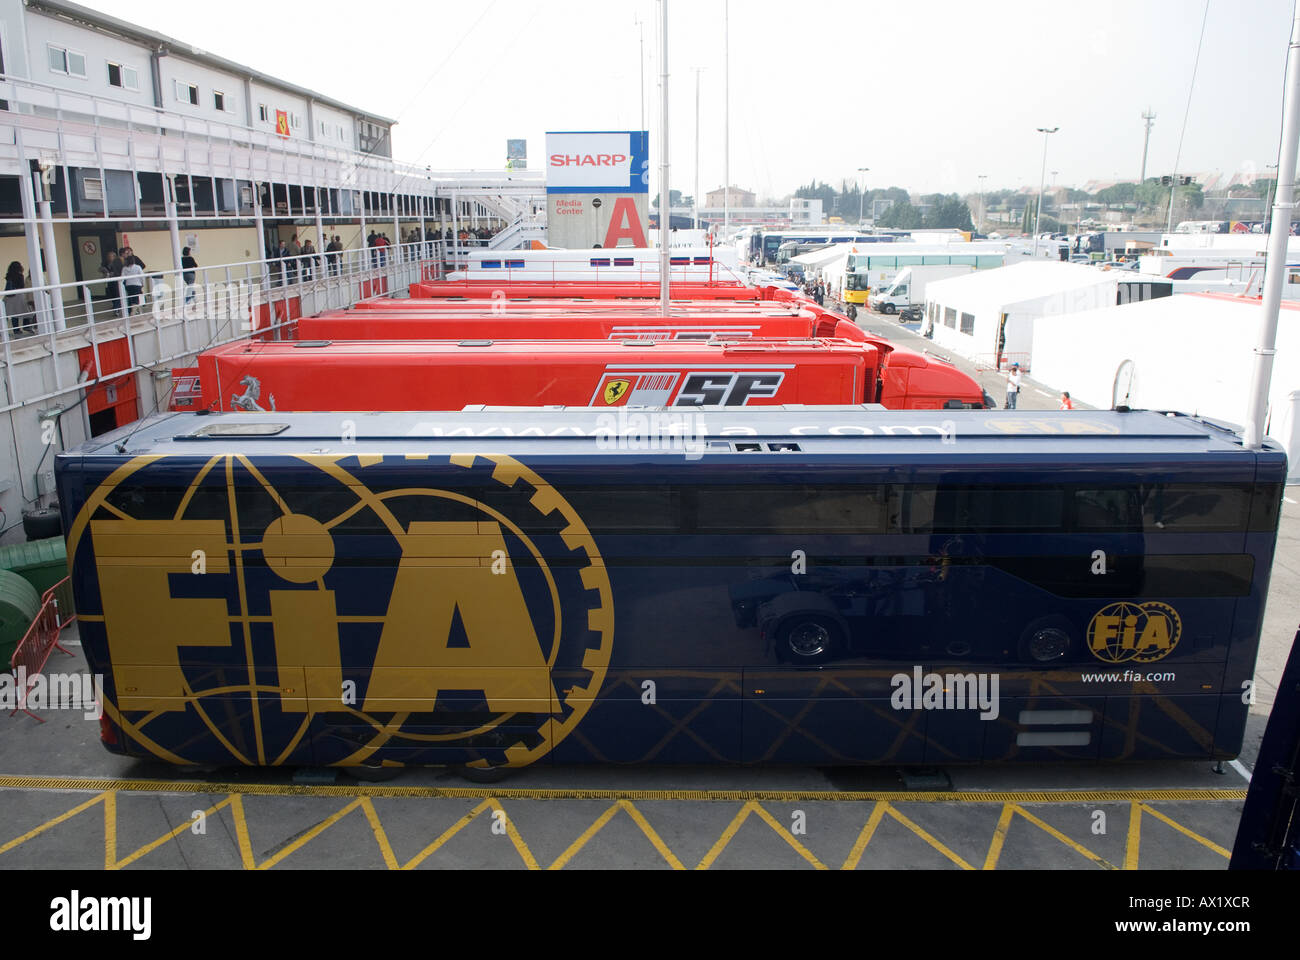 Carretilla de la FIA en el Paddock en las sesiones de pruebas de Fórmula 1 Foto de stock